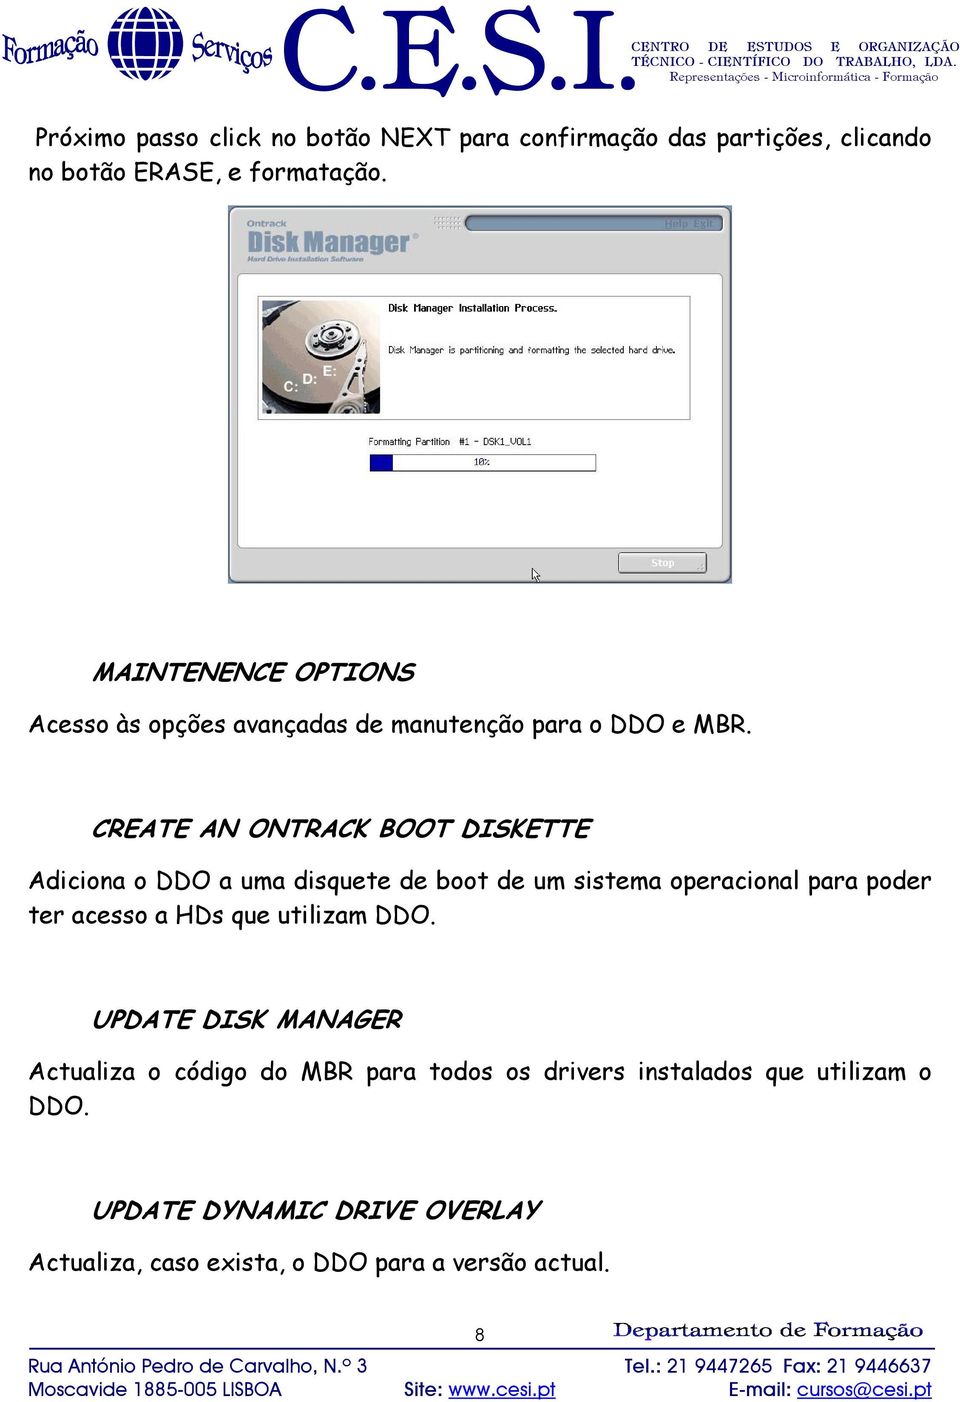 CREATE AN ONTRACK BOOT DISKETTE Adiciona o DDO a uma disquete de boot de um sistema operacional para poder ter acesso a HDs